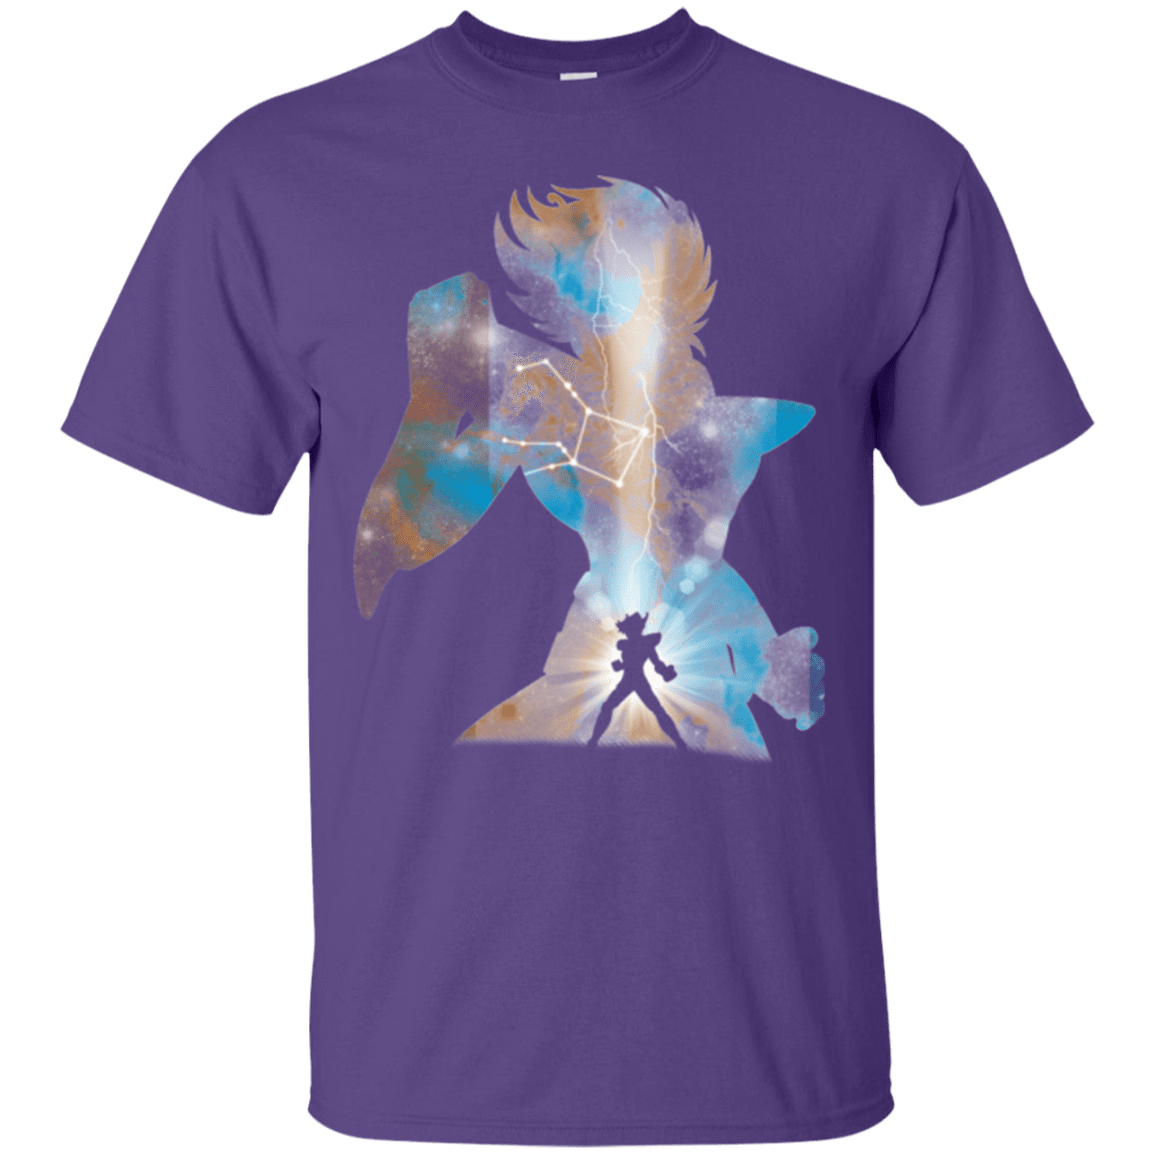 T-Shirts Purple / Small The Pegasus T-Shirt